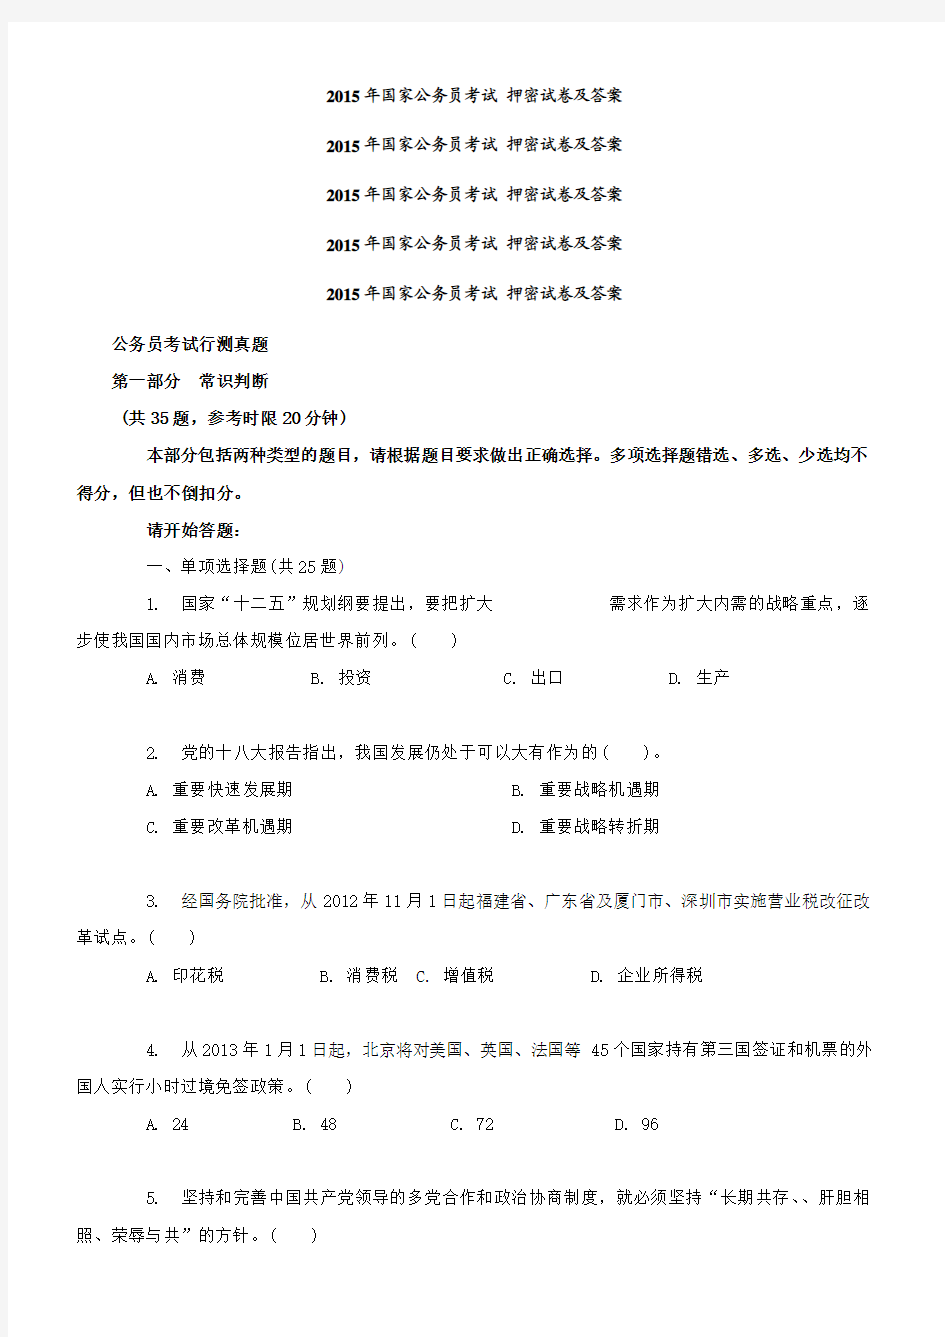 2015年国家公务员考试 押密试卷及答案 北京市公务员考试__行测真题及答案解析_(完整版)